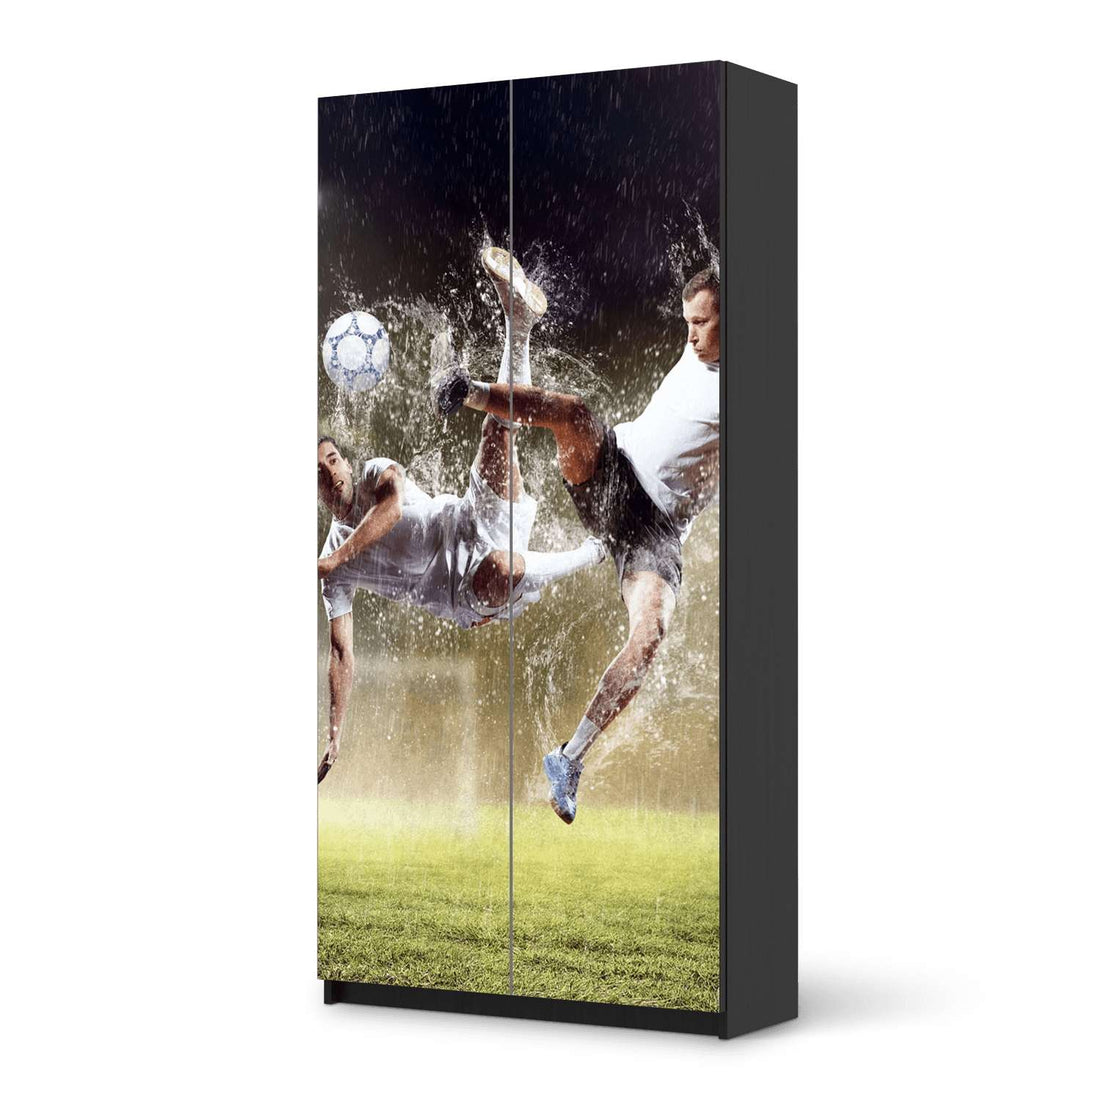 Klebefolie für Möbel Soccer - IKEA Pax Schrank 201 cm Höhe - 2 Türen - schwarz